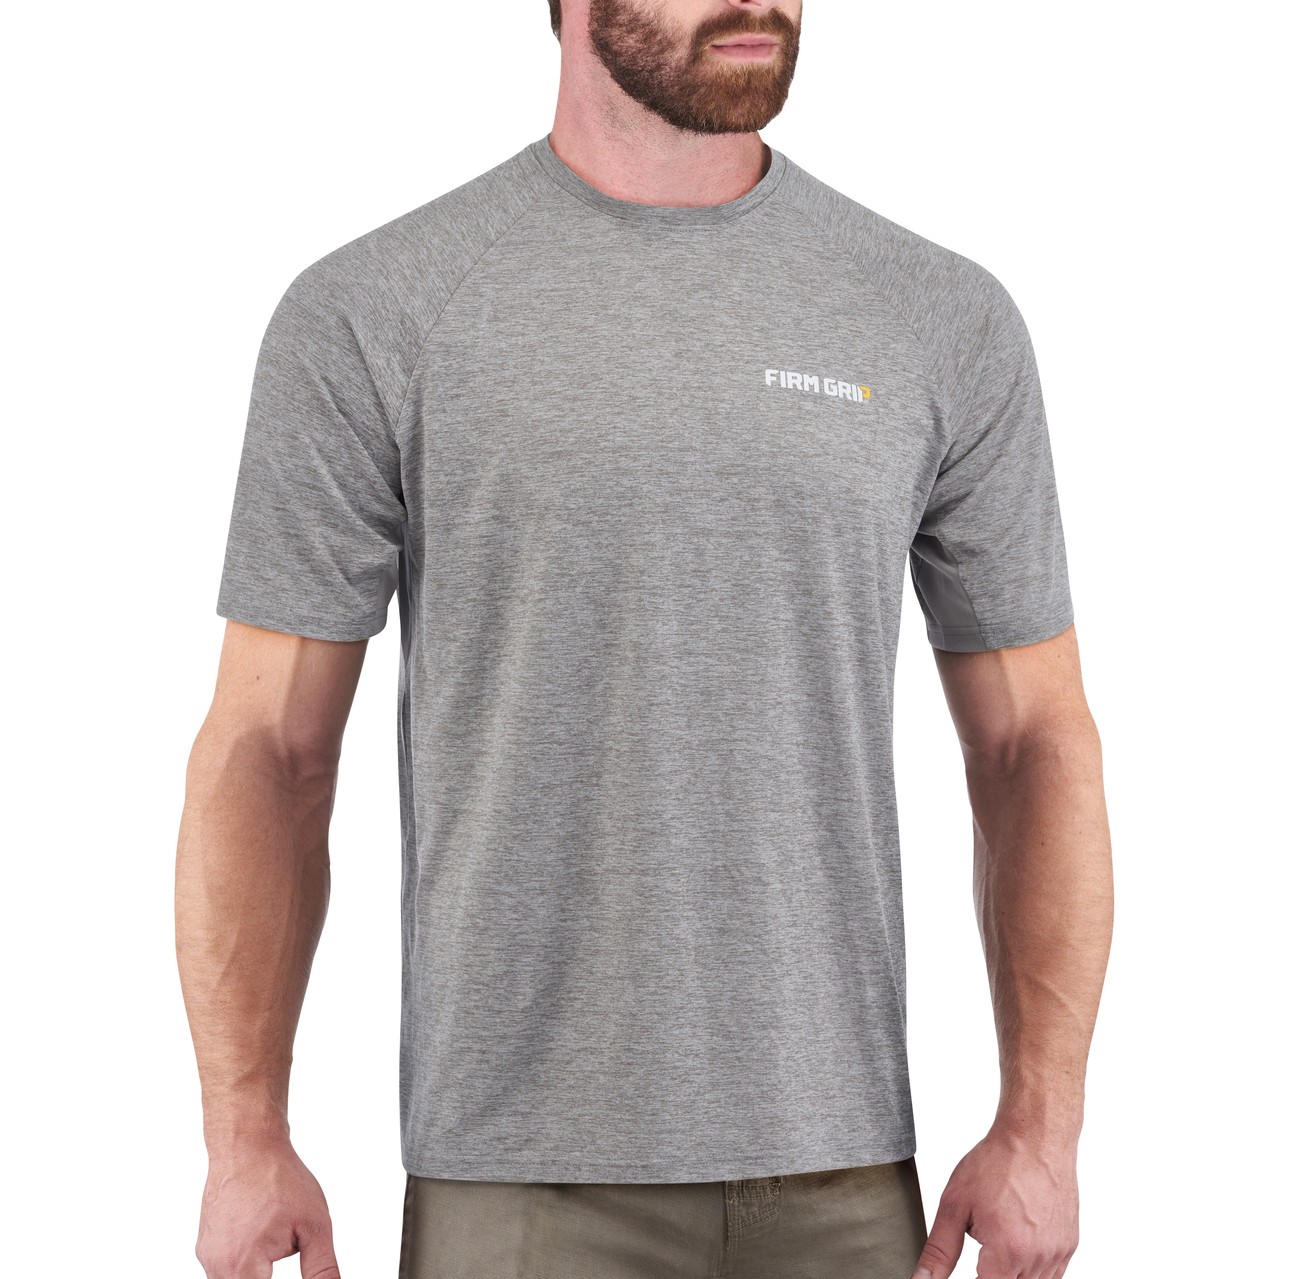 Men's Gray Performance Short Sleeved Shirt - Firm Grip